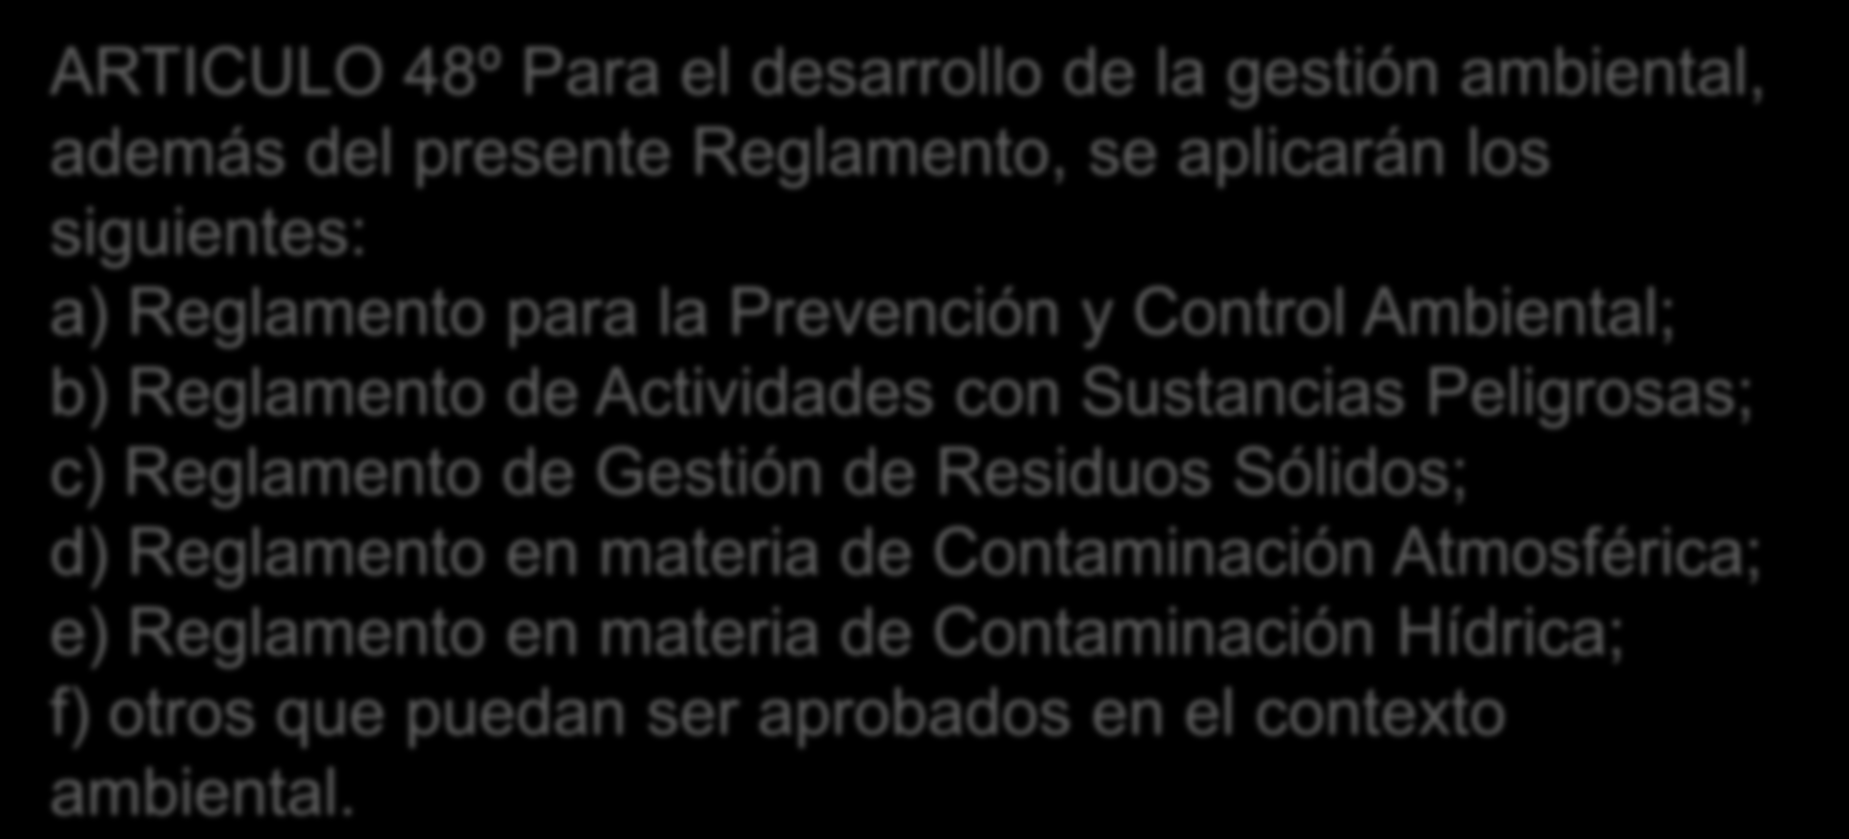 LA LEY 1333 DE MEDIO AMBIENTE 3 ARTICULO 48º Para el desarrollo de la gestión ambiental, además del presente Reglamento, se aplicarán los siguientes: a) Reglamento para la Prevención y Control